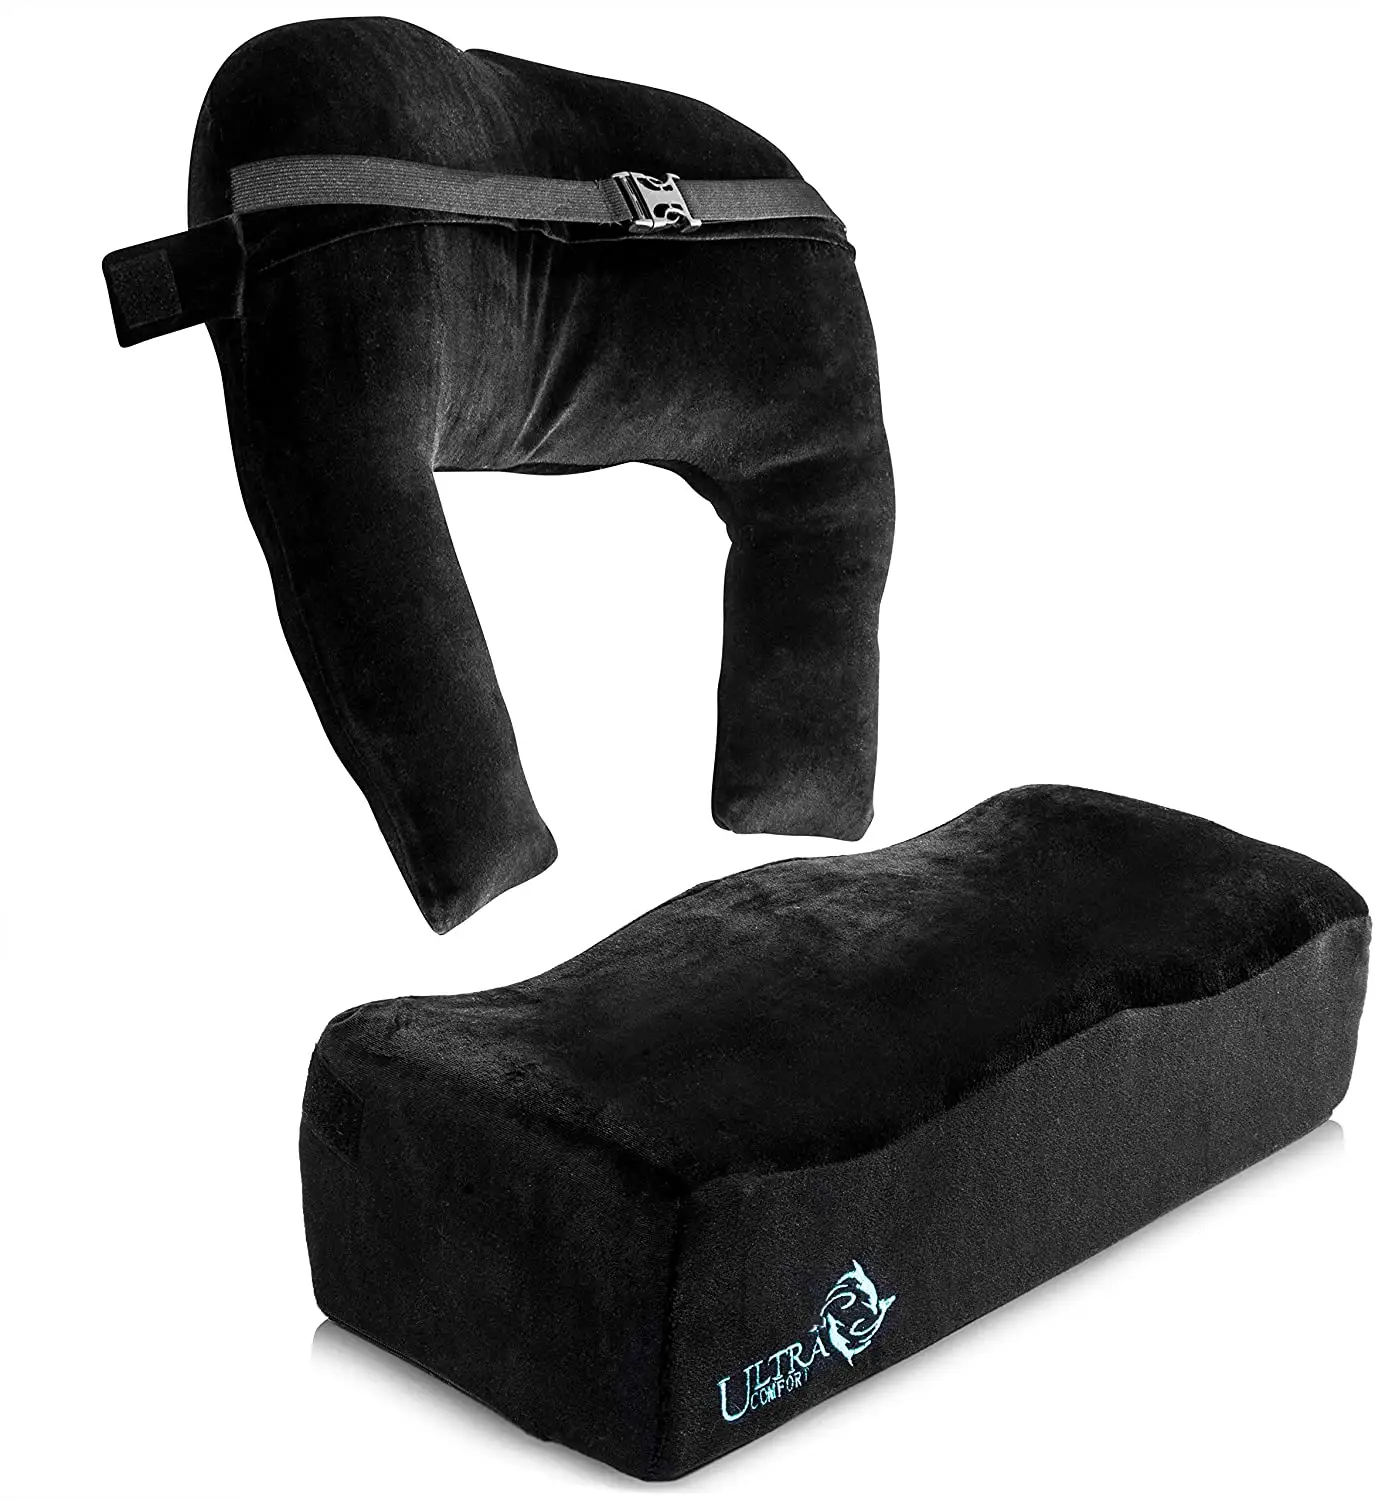 Cuscino brasiliano di sollevamento del culo + cuscino di supporto per la schiena cuscino in schiuma BBL con borsa per il trasporto e cuscino posteriore dopo chirurgia